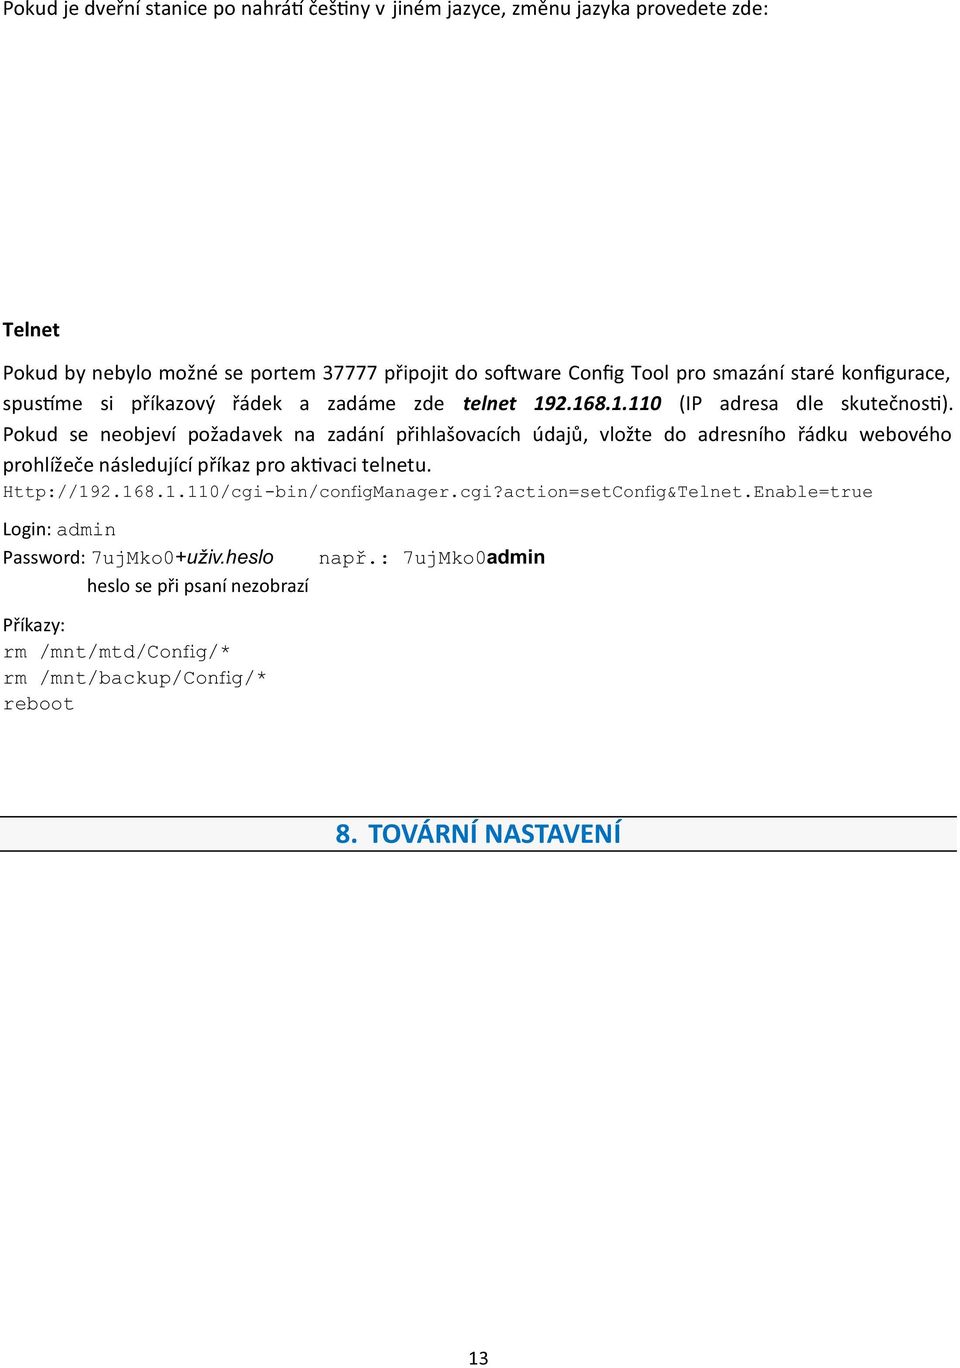 Pokud se neobjeví požadavek na zadání přihlašovacích údajů, vložte do adresního řádku webového prohlížeče následující příkaz pro ak vaci telnetu. Http://192.168.1.110/cgi-bin/configManager.cgi?action=setConfig&Telnet.